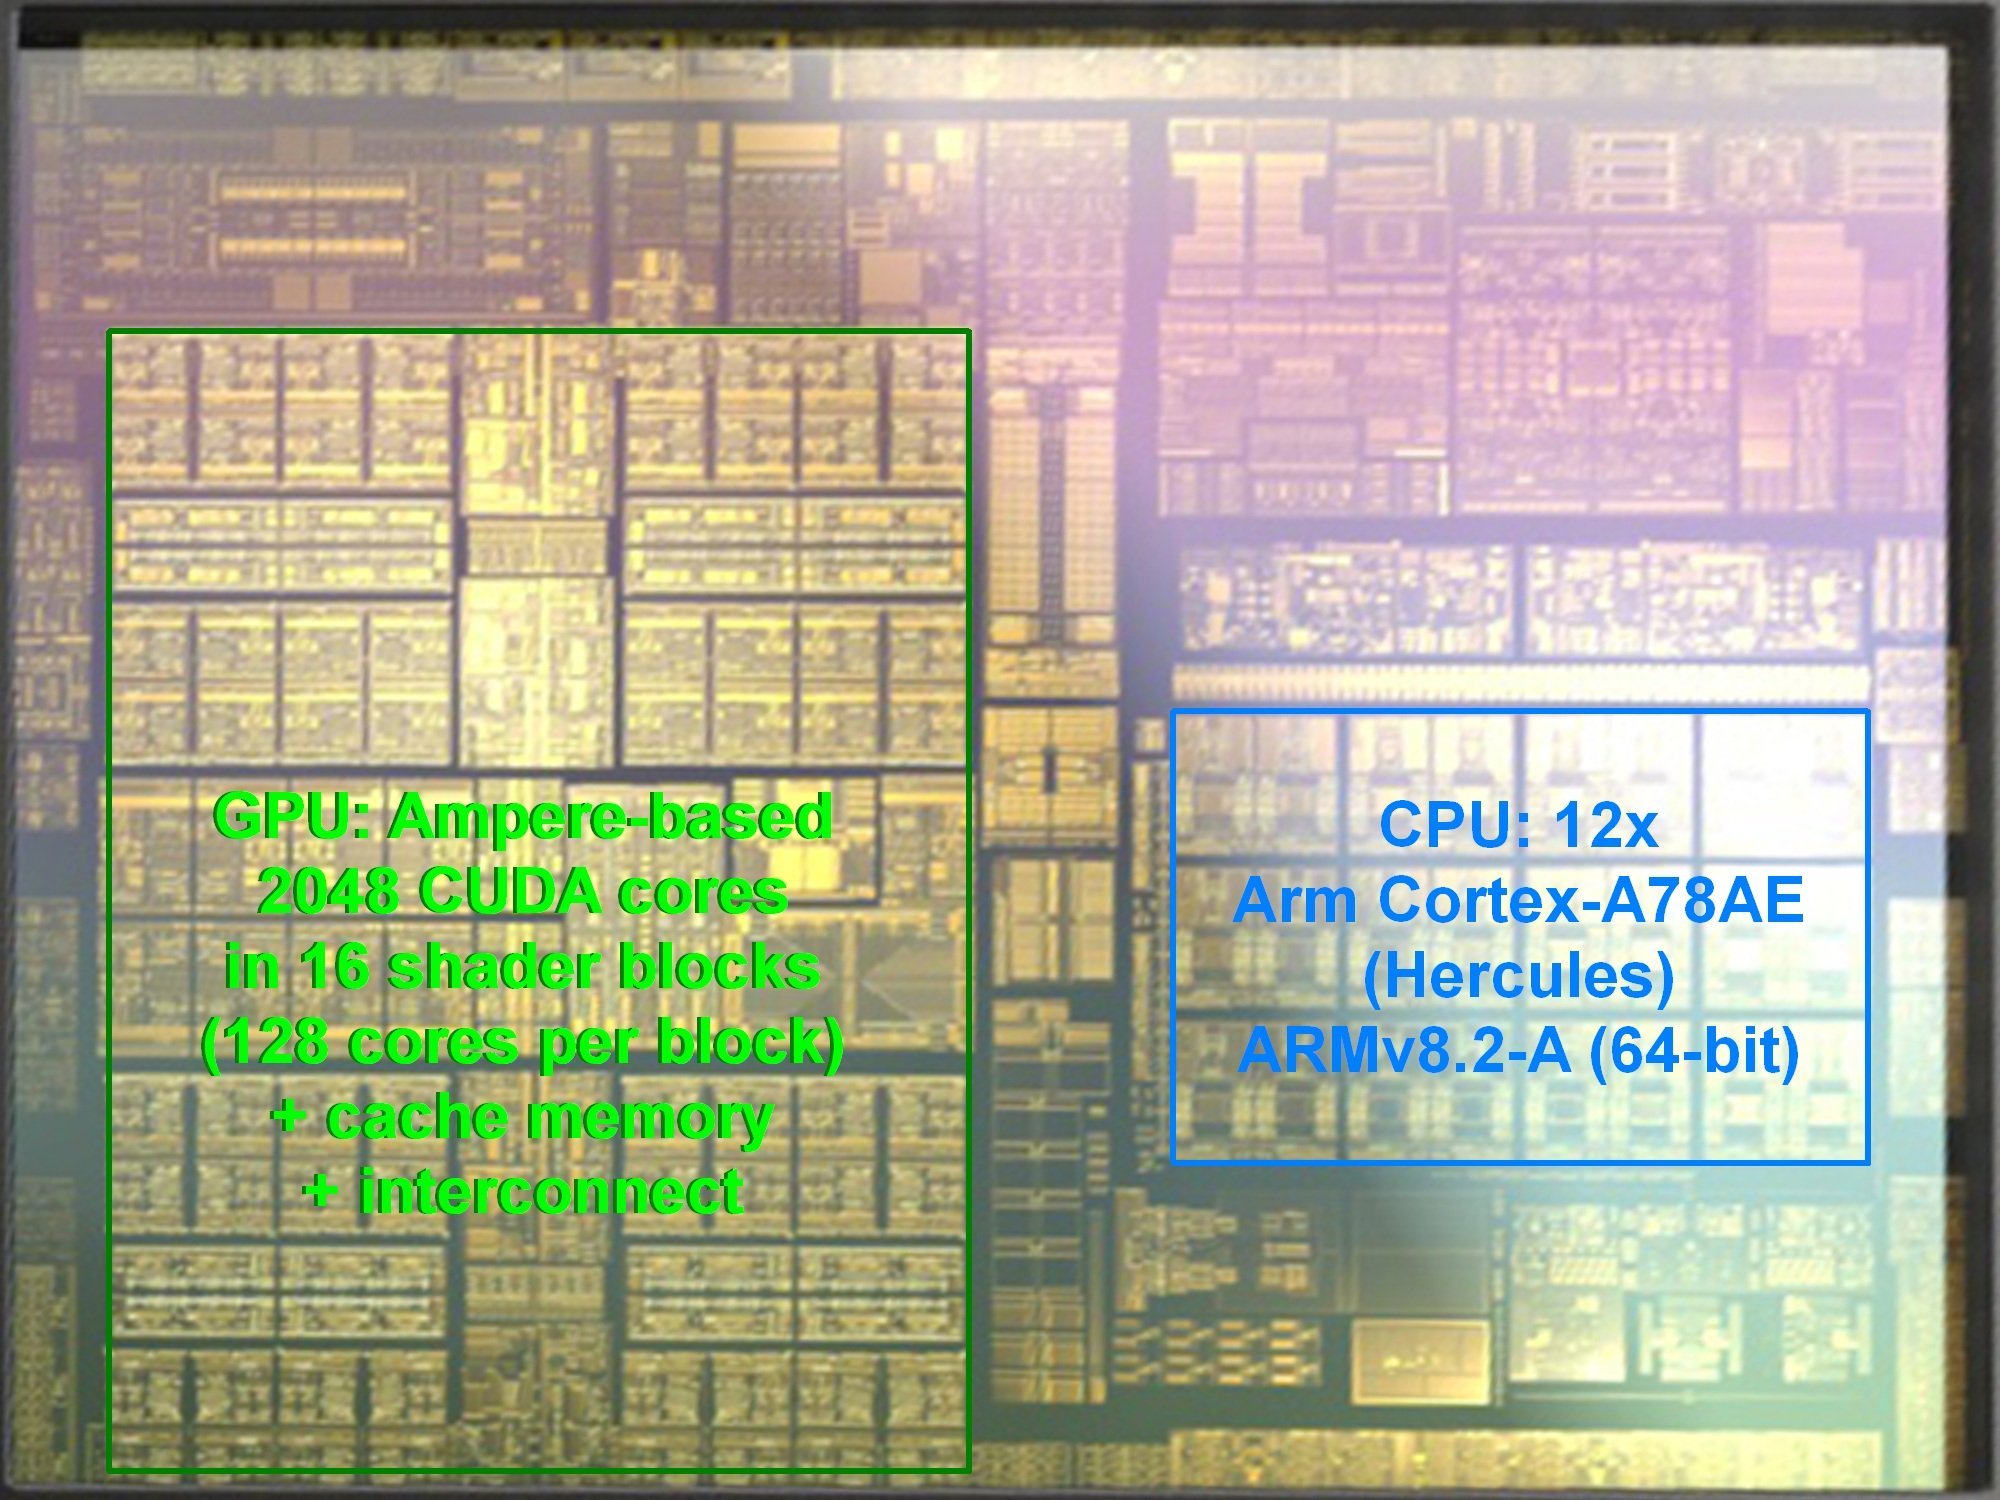 消息称Switch Pro的处理器SoC可能是来自英伟达的Tegra Orin芯片